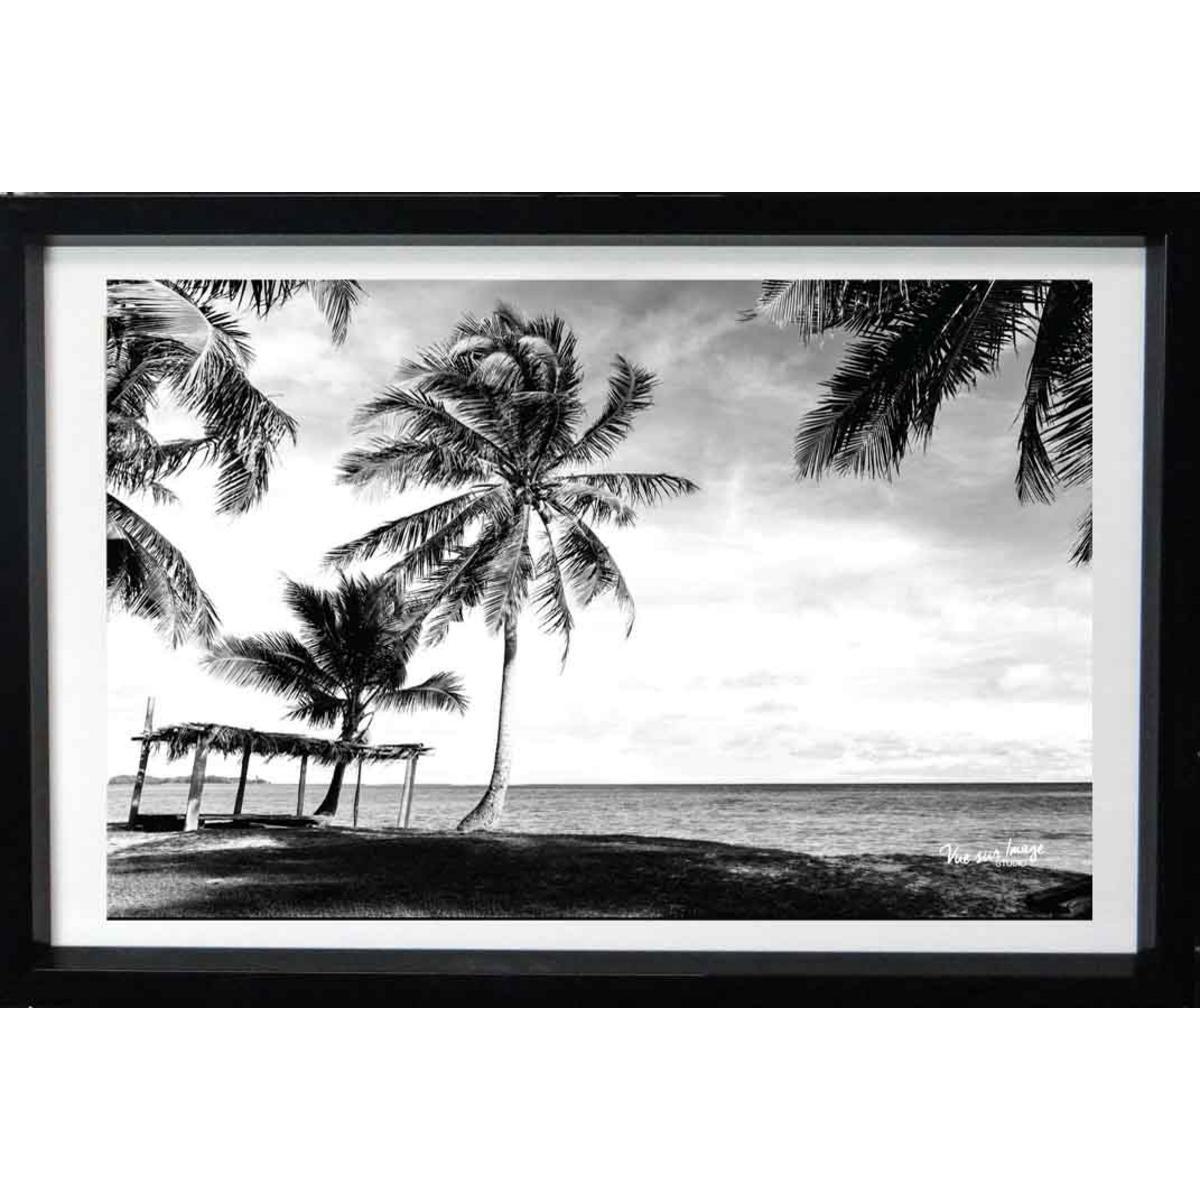 Cadre photo décoratif - Plastique - 30 x 20 cm - Noir et blanc